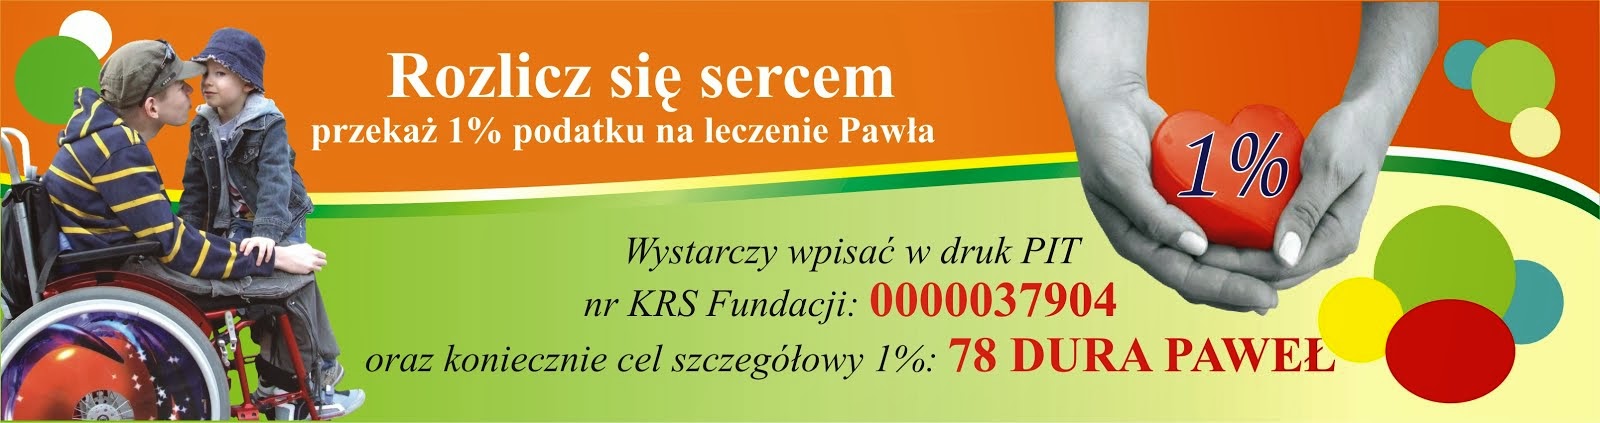 Podaruj proszę 1% podatku Pawełkowi